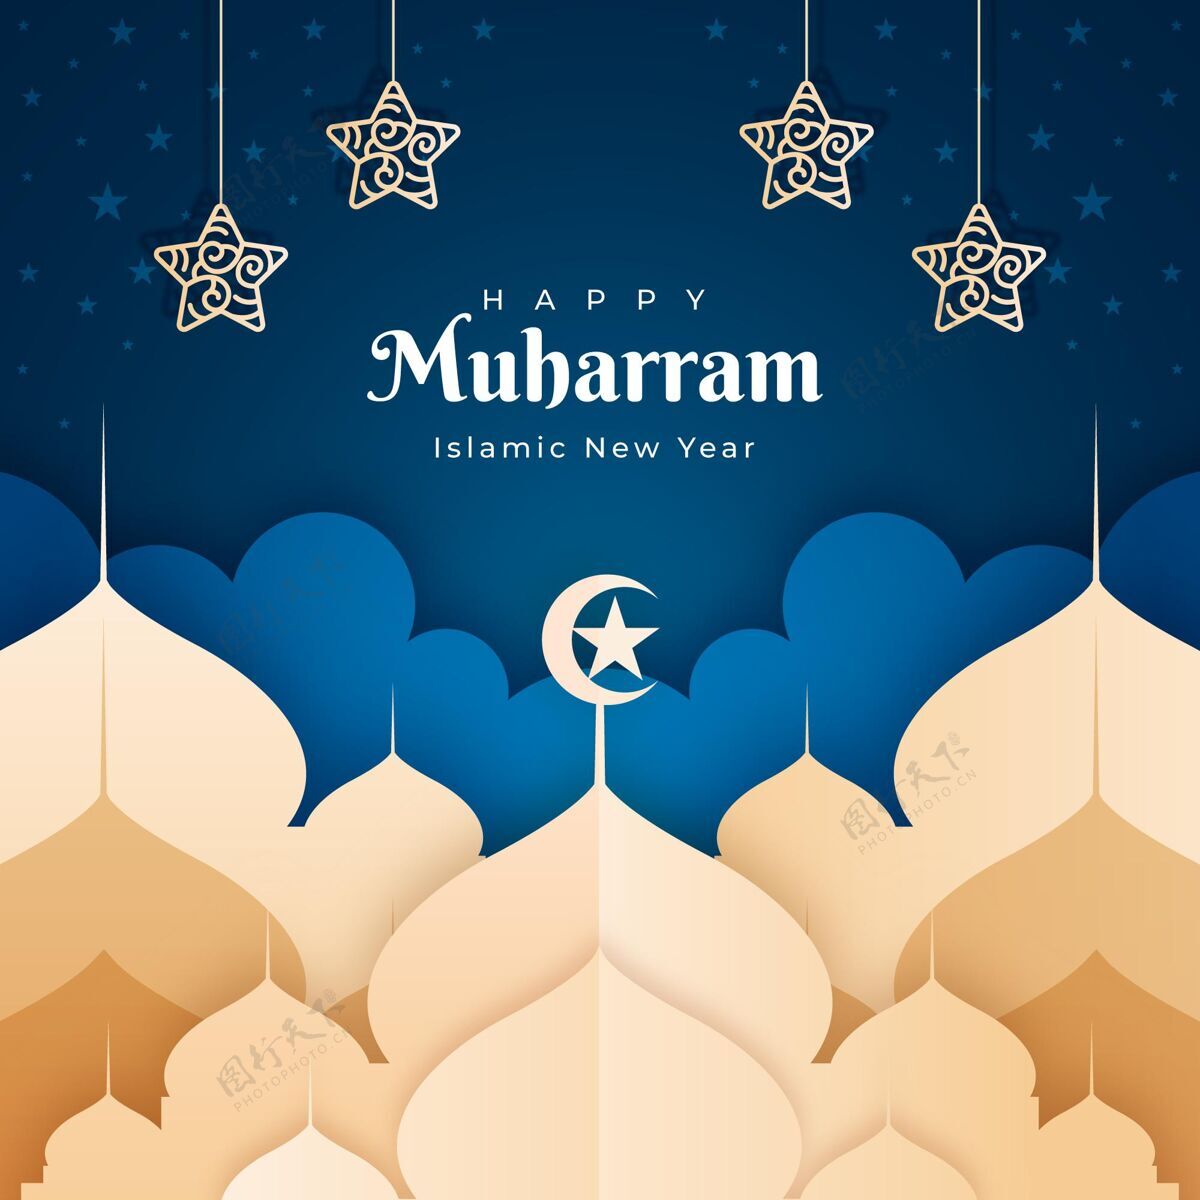 纸制纸张风格的muharram插图8月31日伊斯兰穆哈拉姆快乐